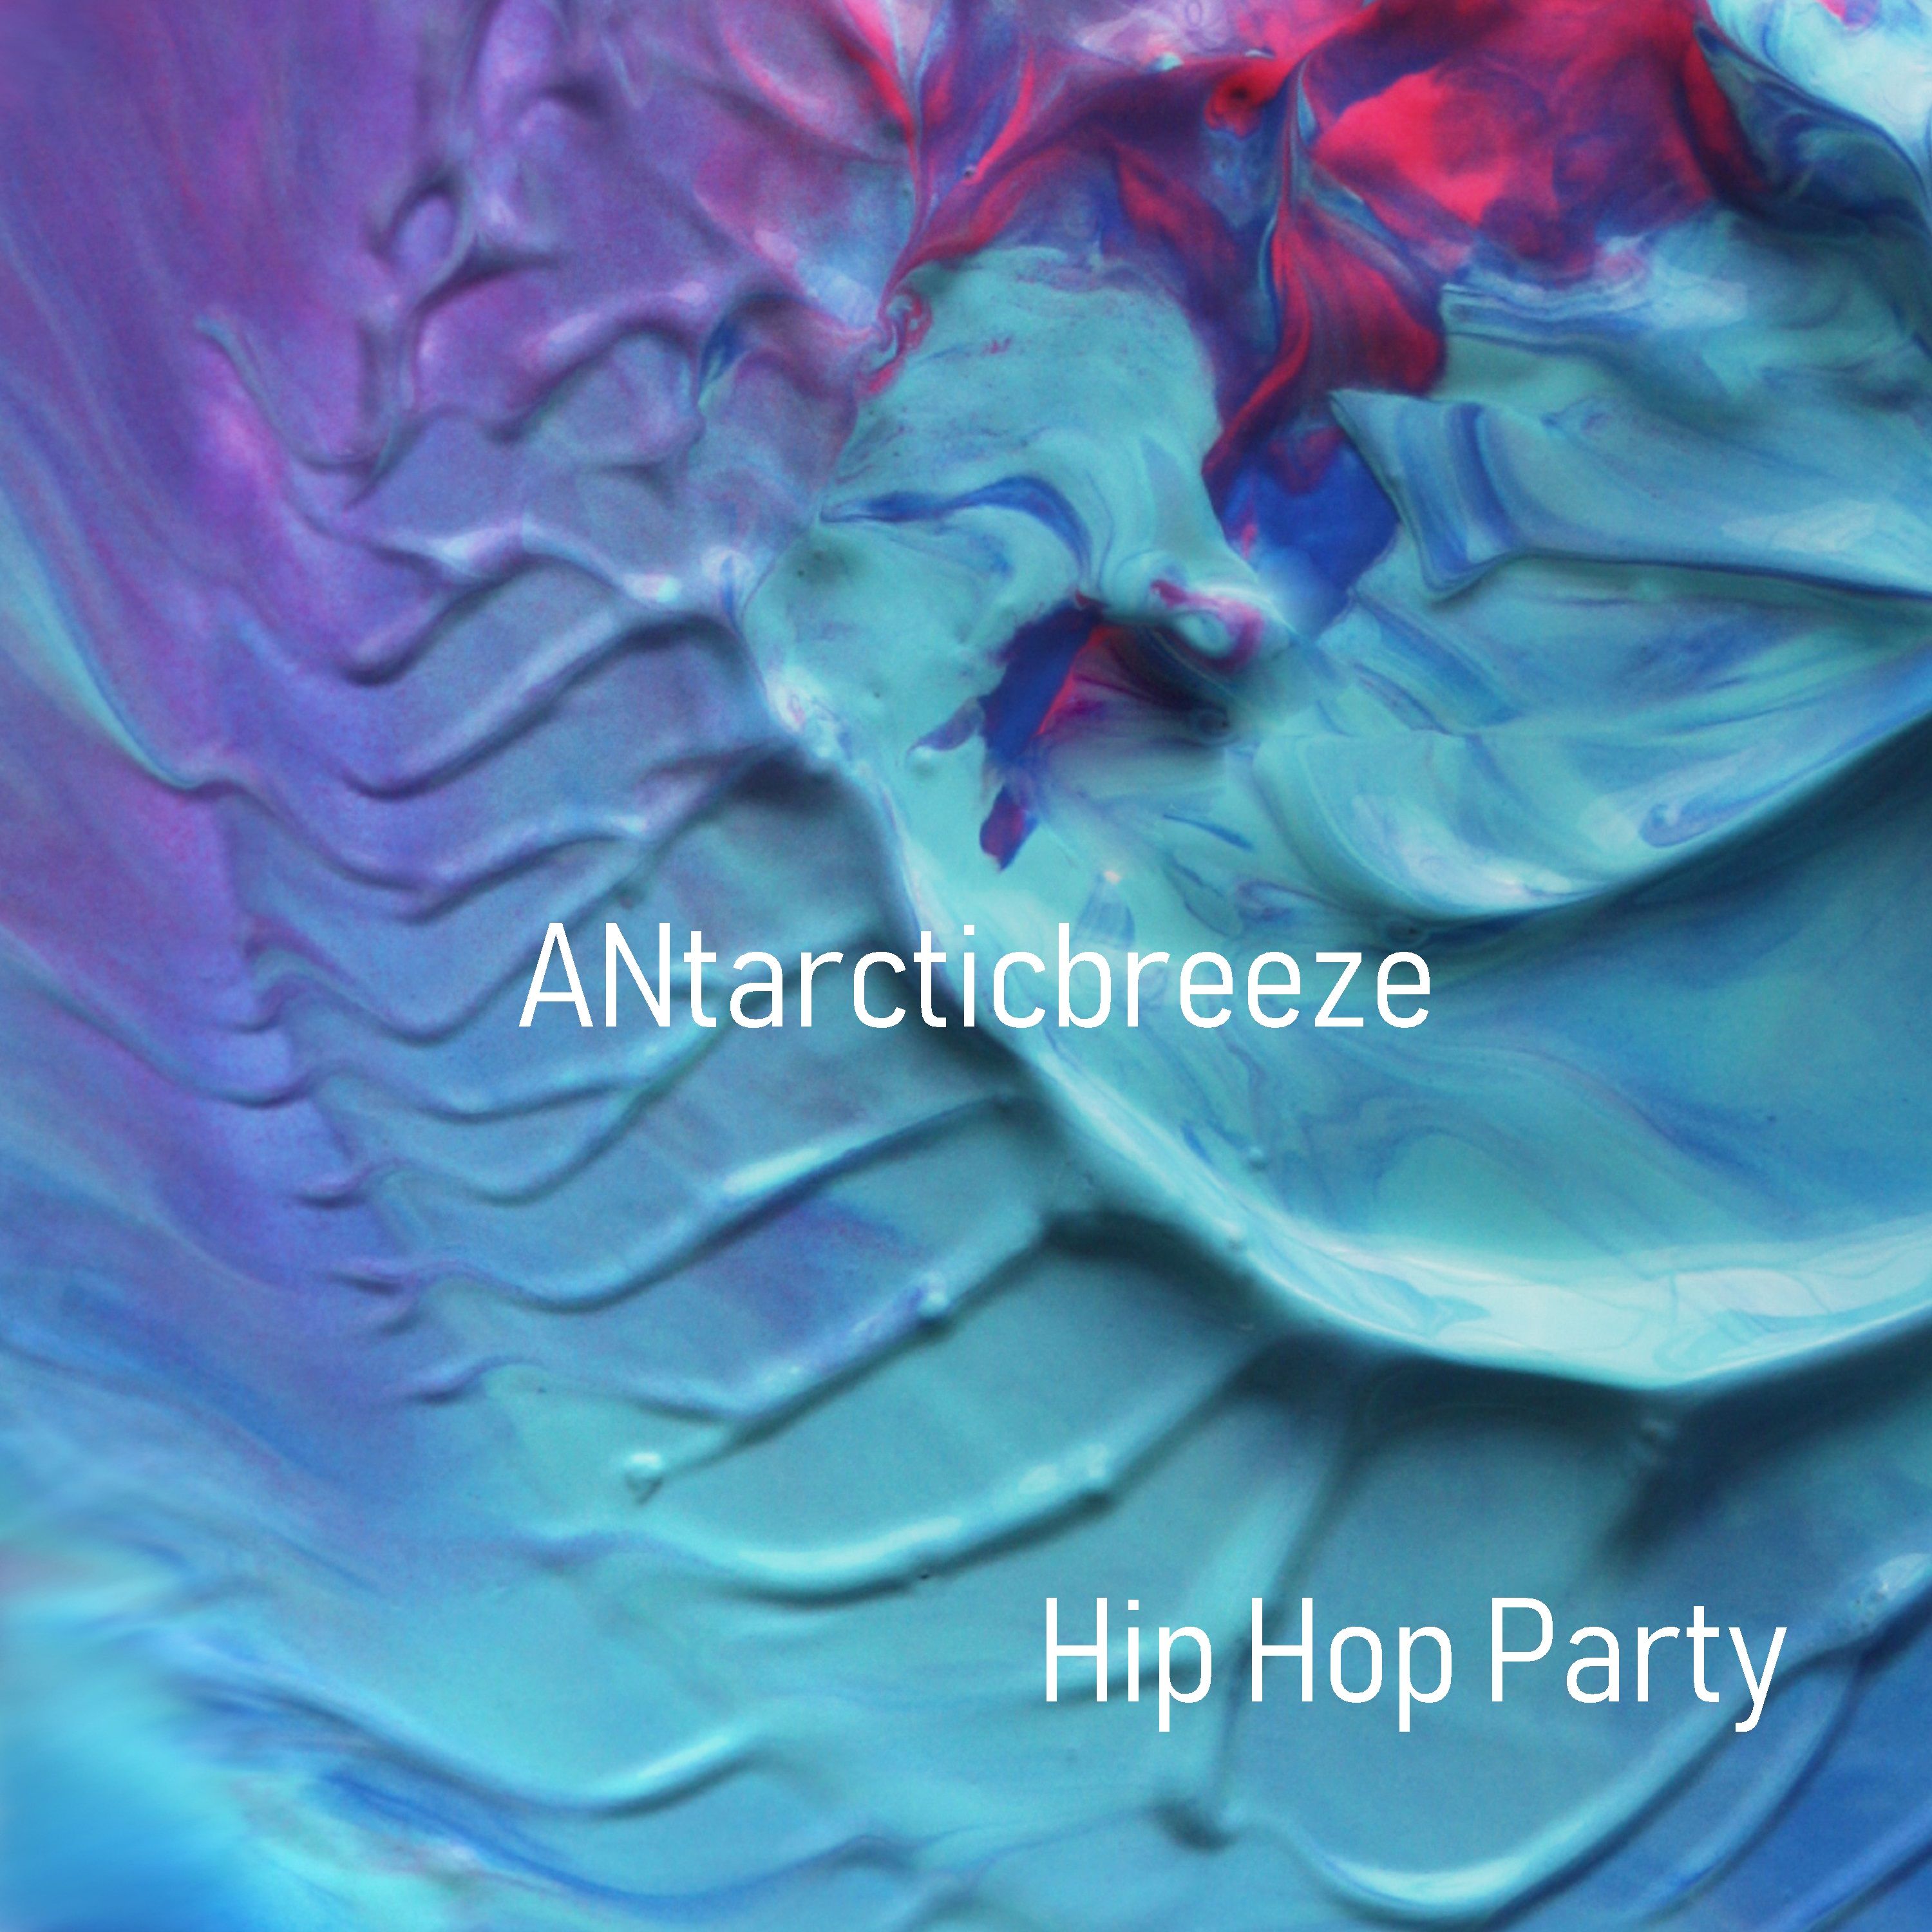 ಡೌನ್ಲೋಡ್ ಮಾಡಿ Hip Hop Party - Positive (Unlimit Use Music) by ANtarcticbreeze